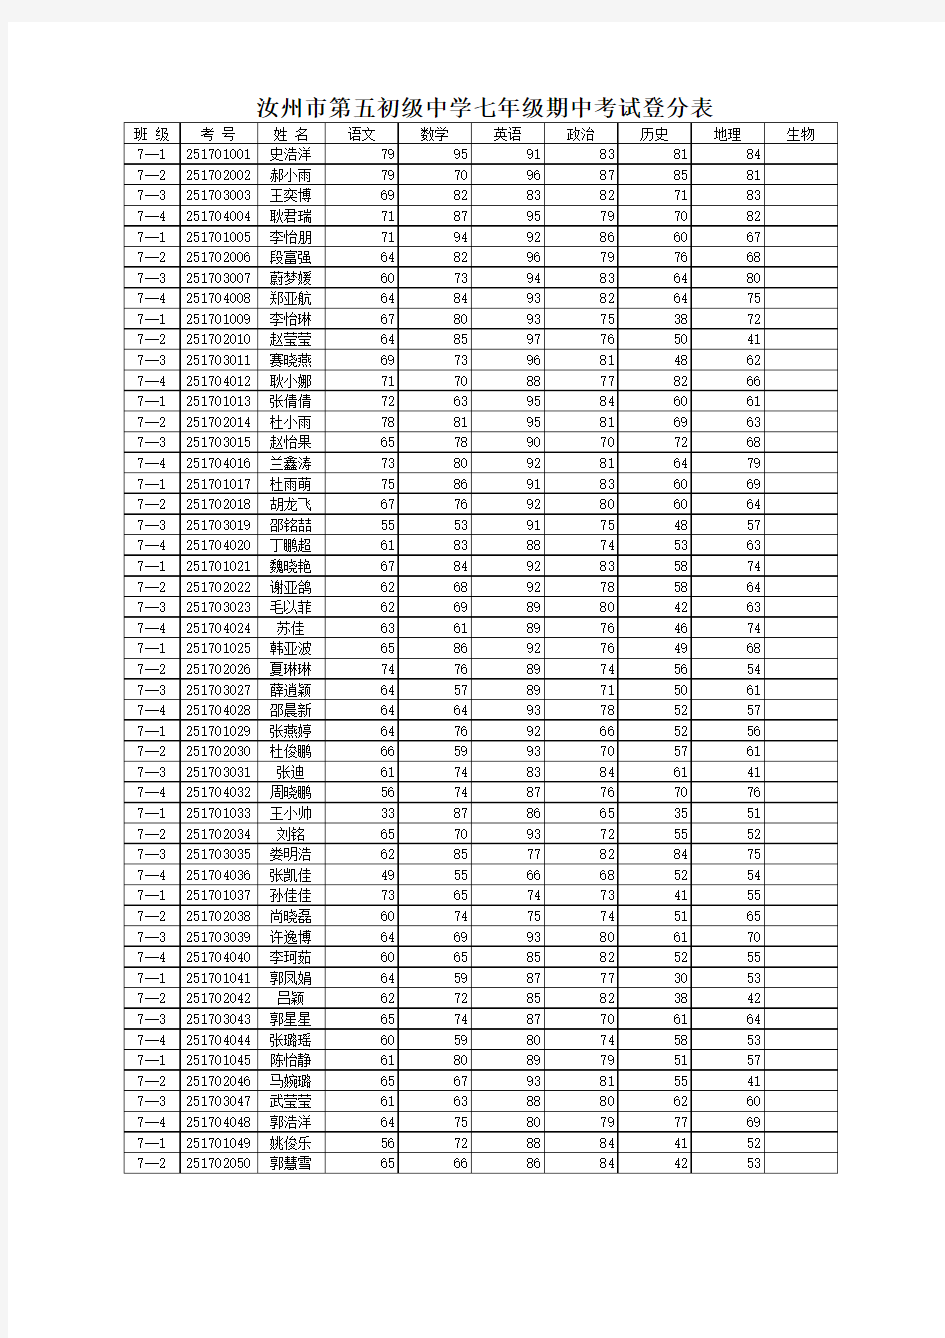 五中期中考试qi登分表